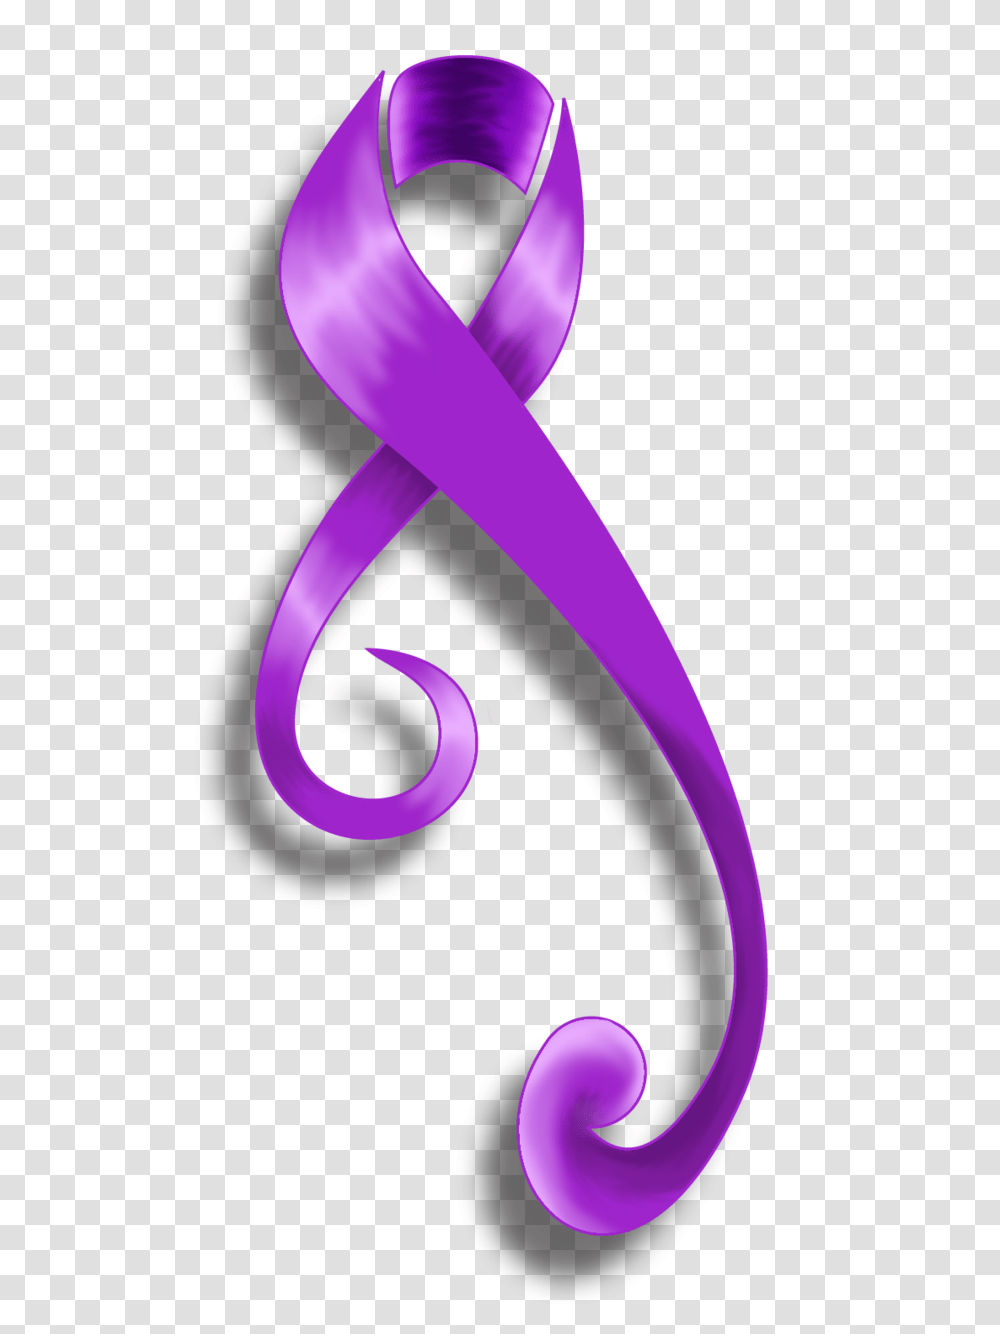 Purple Cancer Ribbon Tattoos Free Image, Smoke, Wristwatch Transparent Png